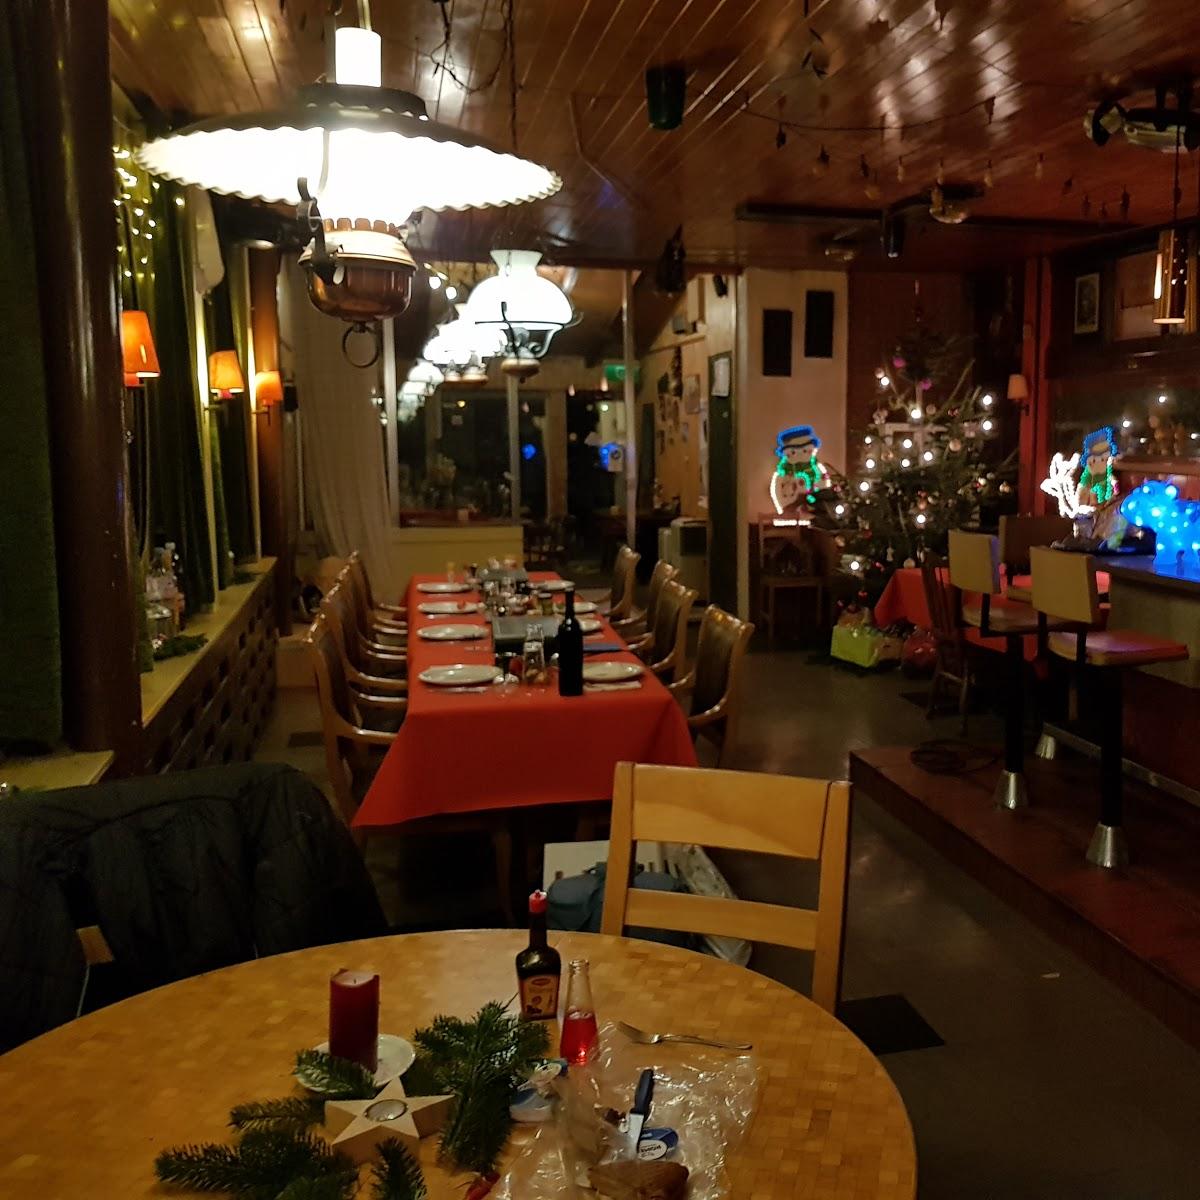 Restaurant "Sternen" in Eschenbach